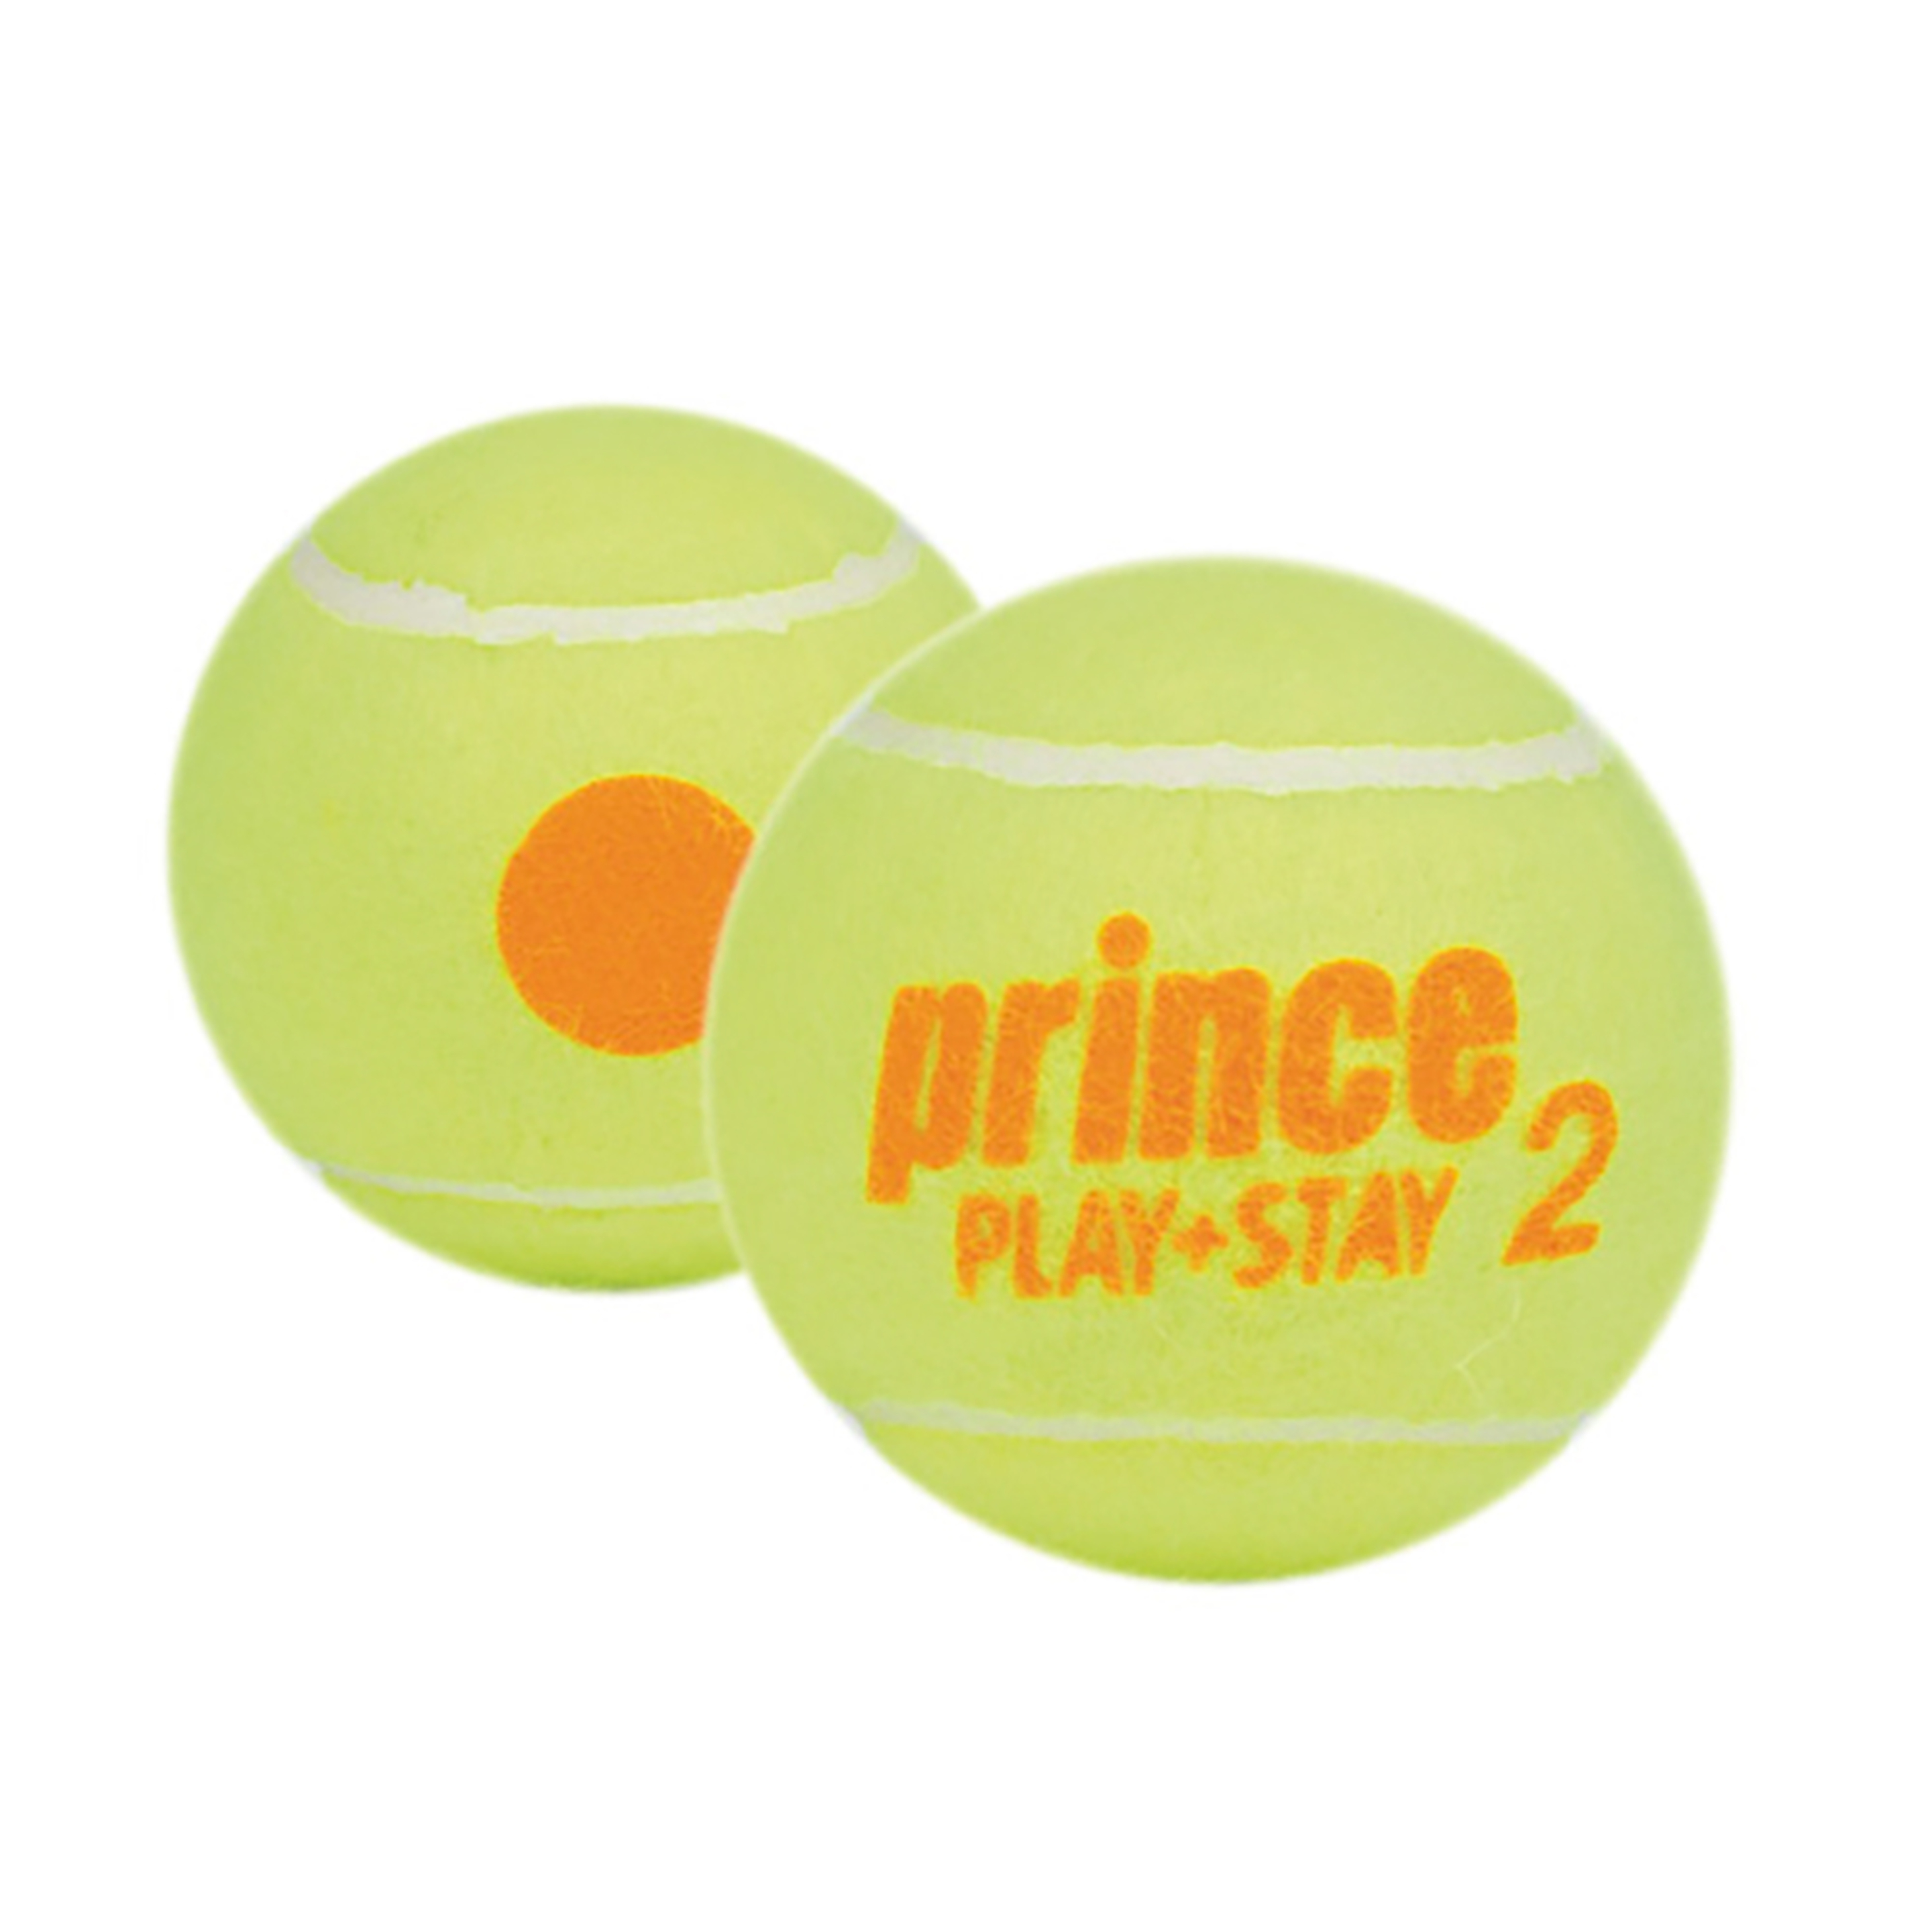 Bolsa De 72 Bolas De Tenis Prince Play & Stay Stage 2 - amarillo - 